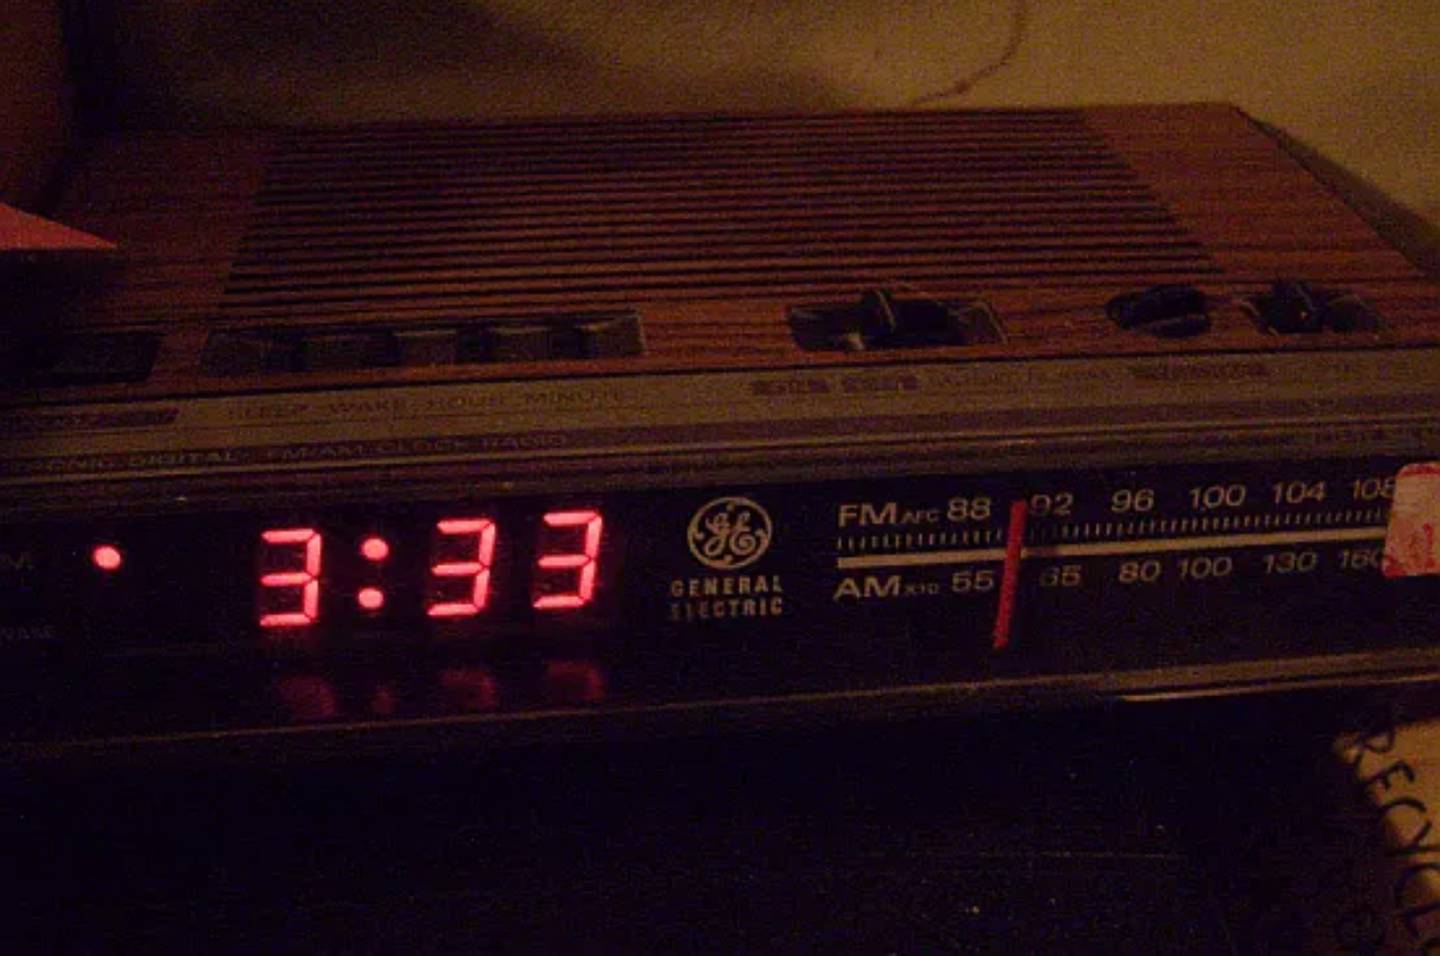 Radio-reloj General Electric, digital antiguo marcando en números rojos las 3:33